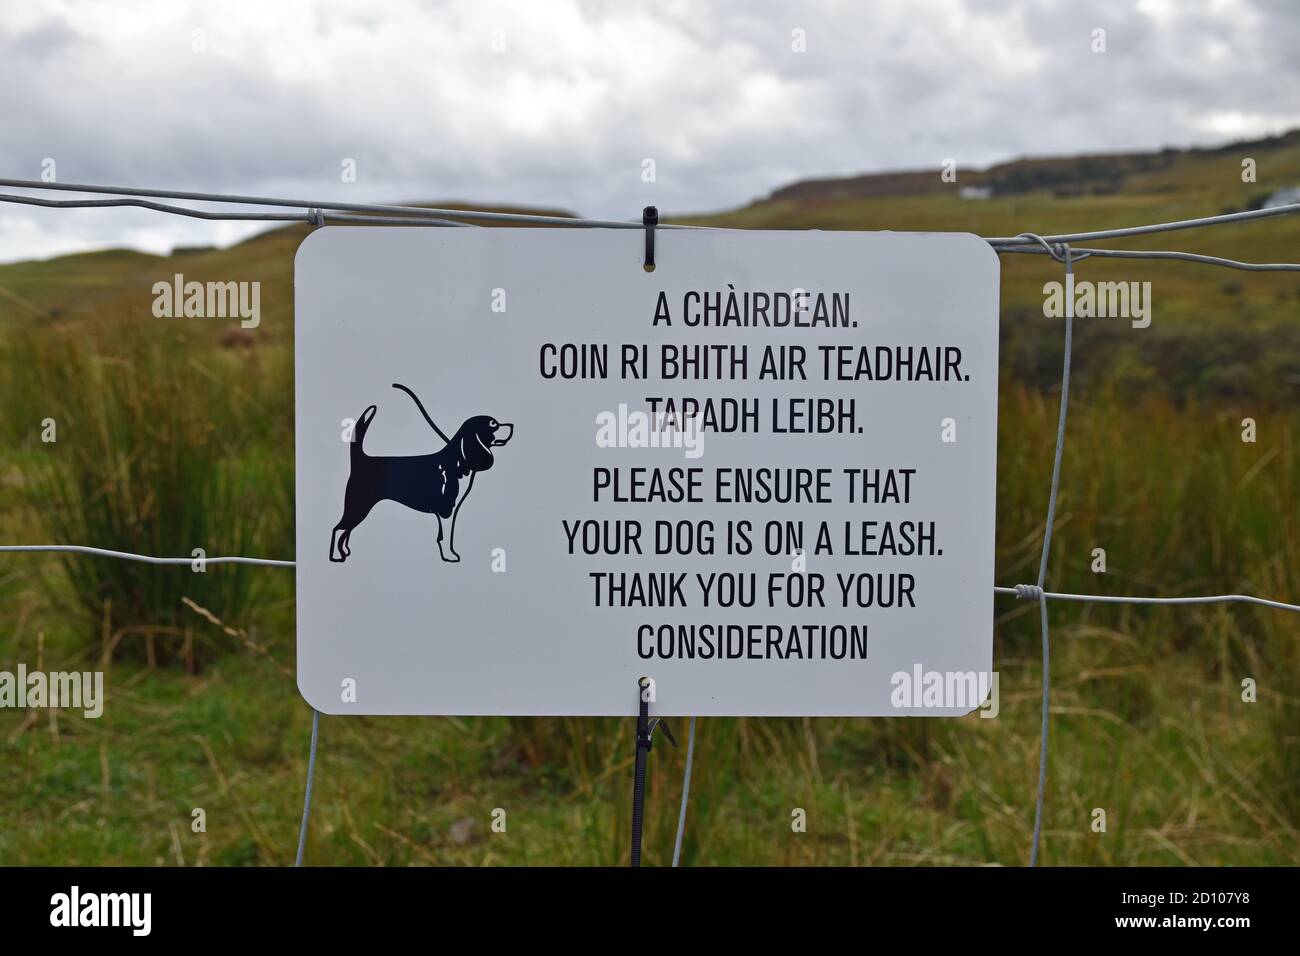 Señal blanca y negra que pide que los perros se mantengan en una correa. Escrito en inglés y gaélico escocés. Ilustración de perro. Fondo rural. Foto de stock